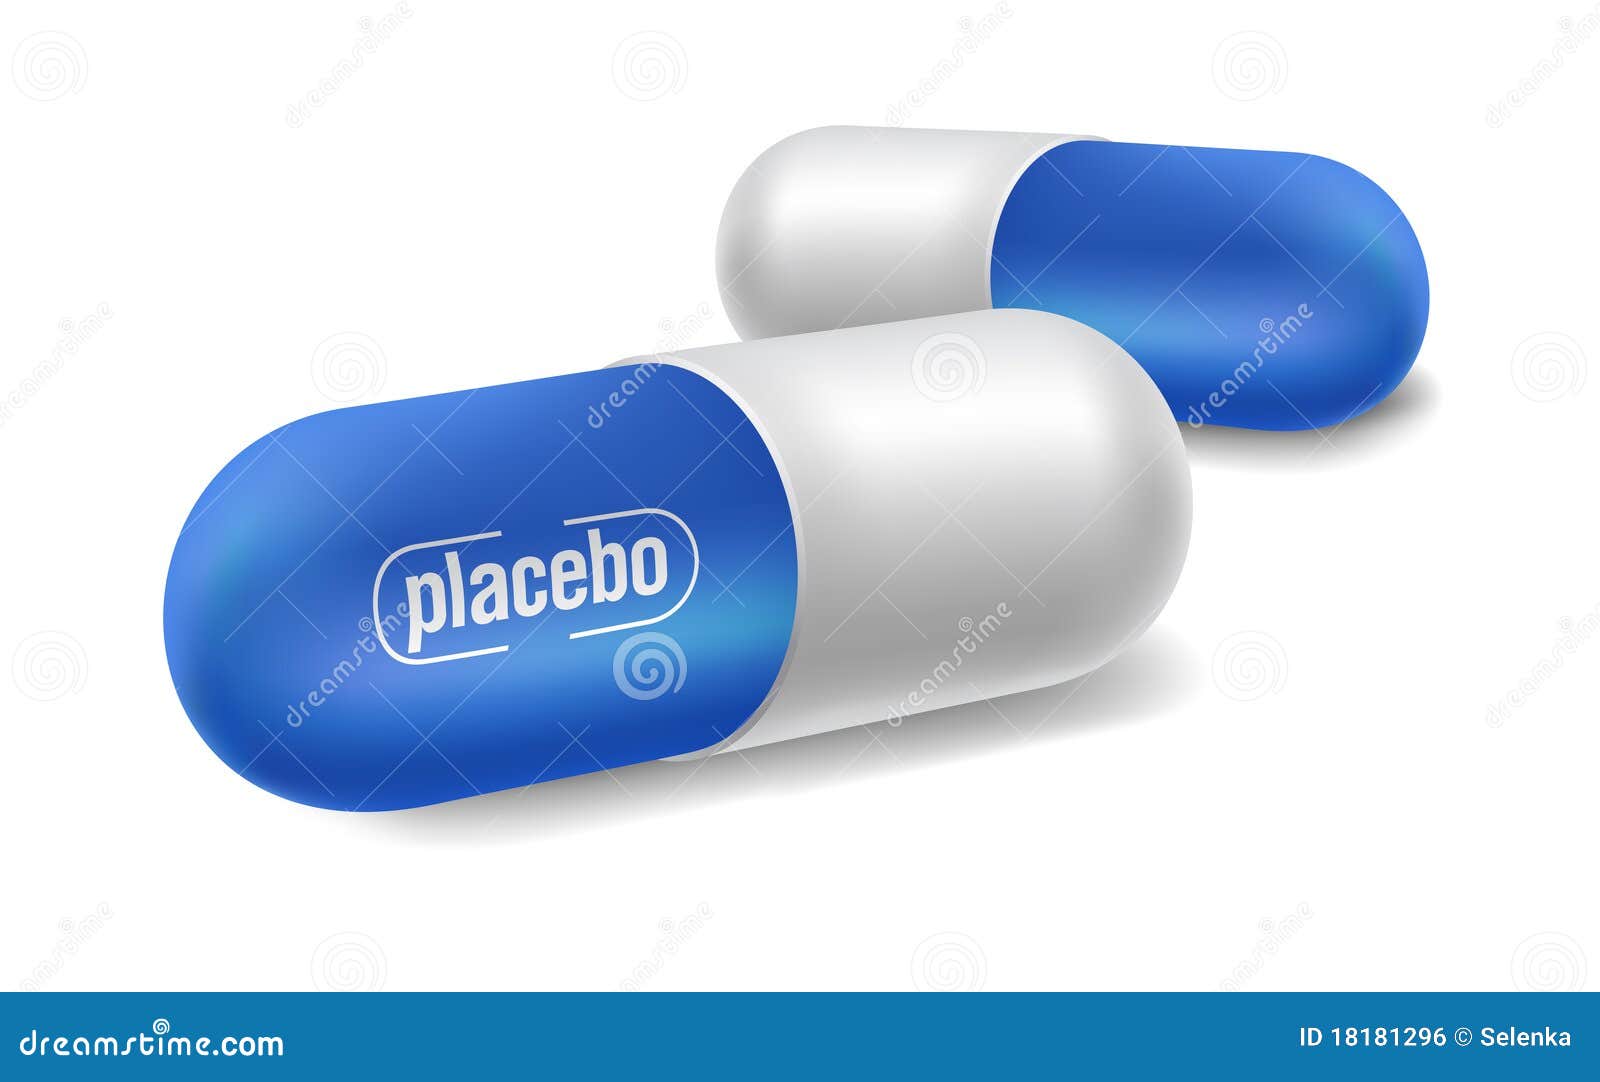 placebo pills